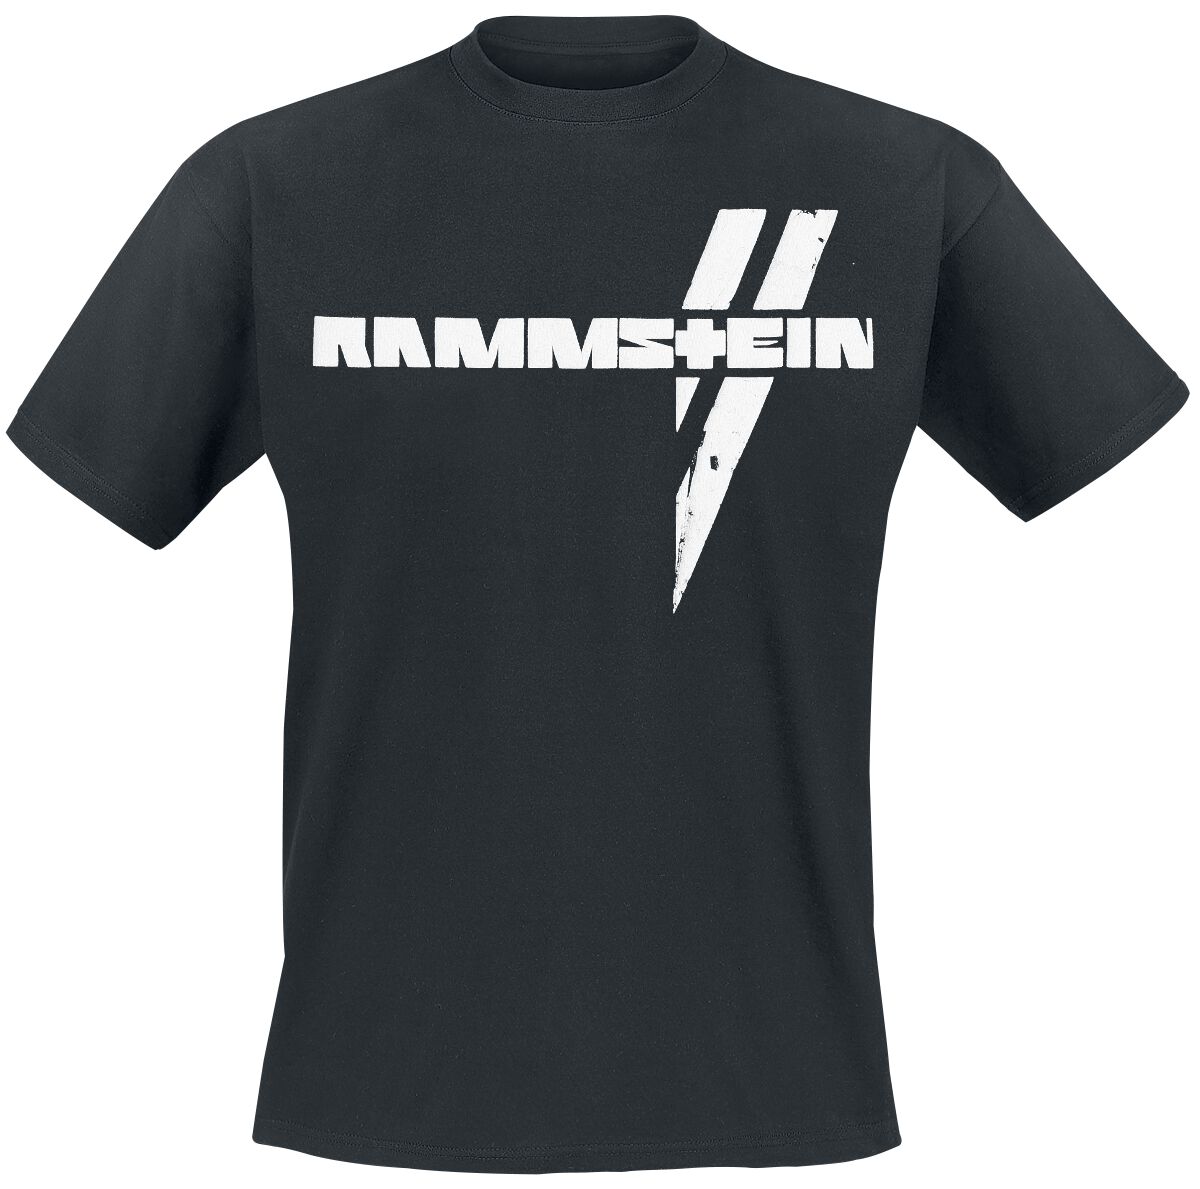 Rammstein T-Shirt - Weiße Balken - S bis 5XL - für Männer - Größe XL - schwarz  - Lizenziertes Merchandise!